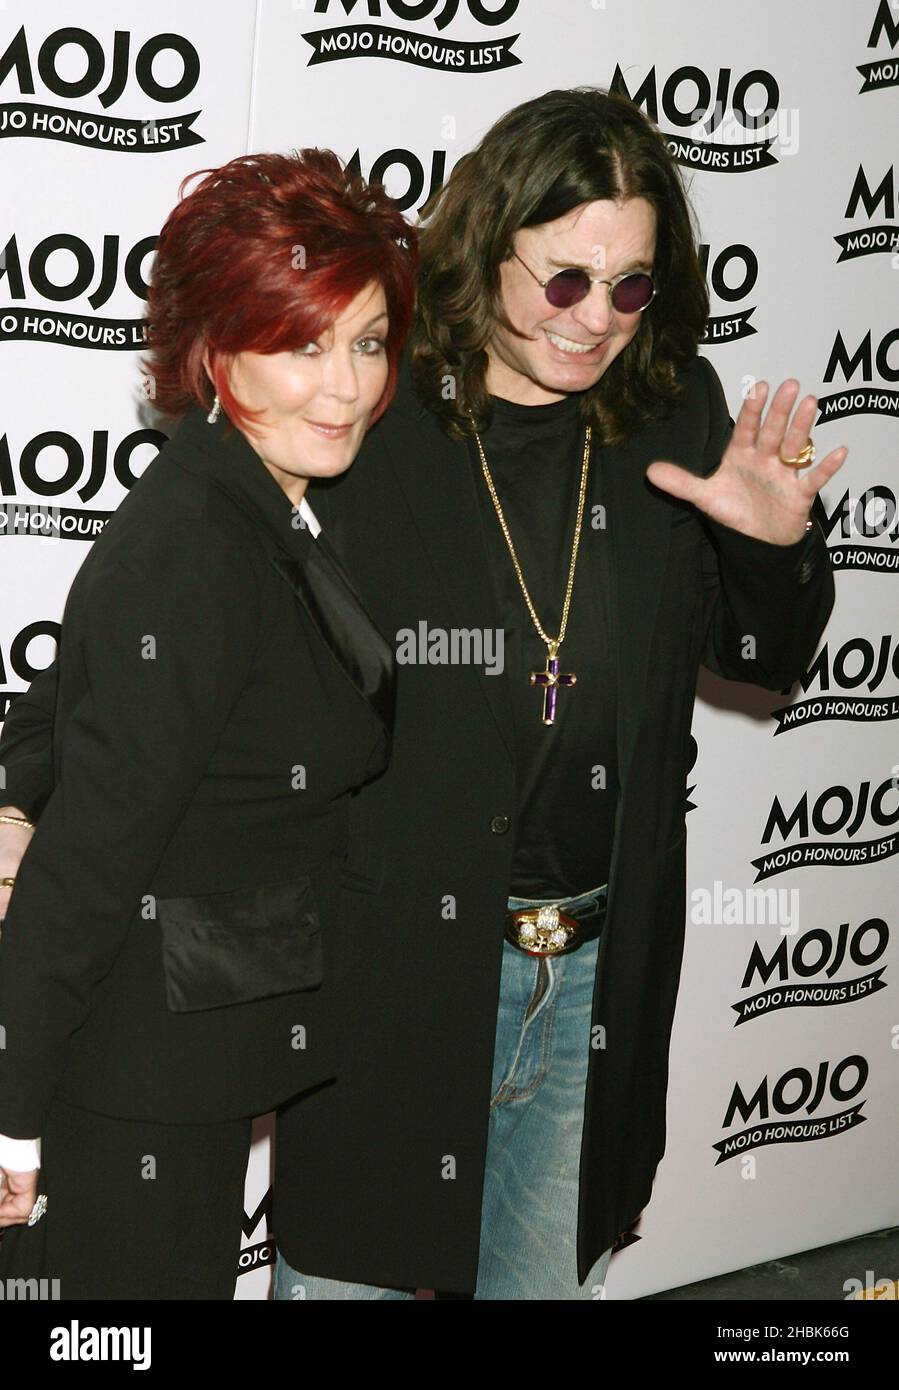 Sharon e Ozzy Osbourne arrivano per la cerimonia di premiazione Mojo Honors List presso la Birreria, a est di Londra. Foto Stock